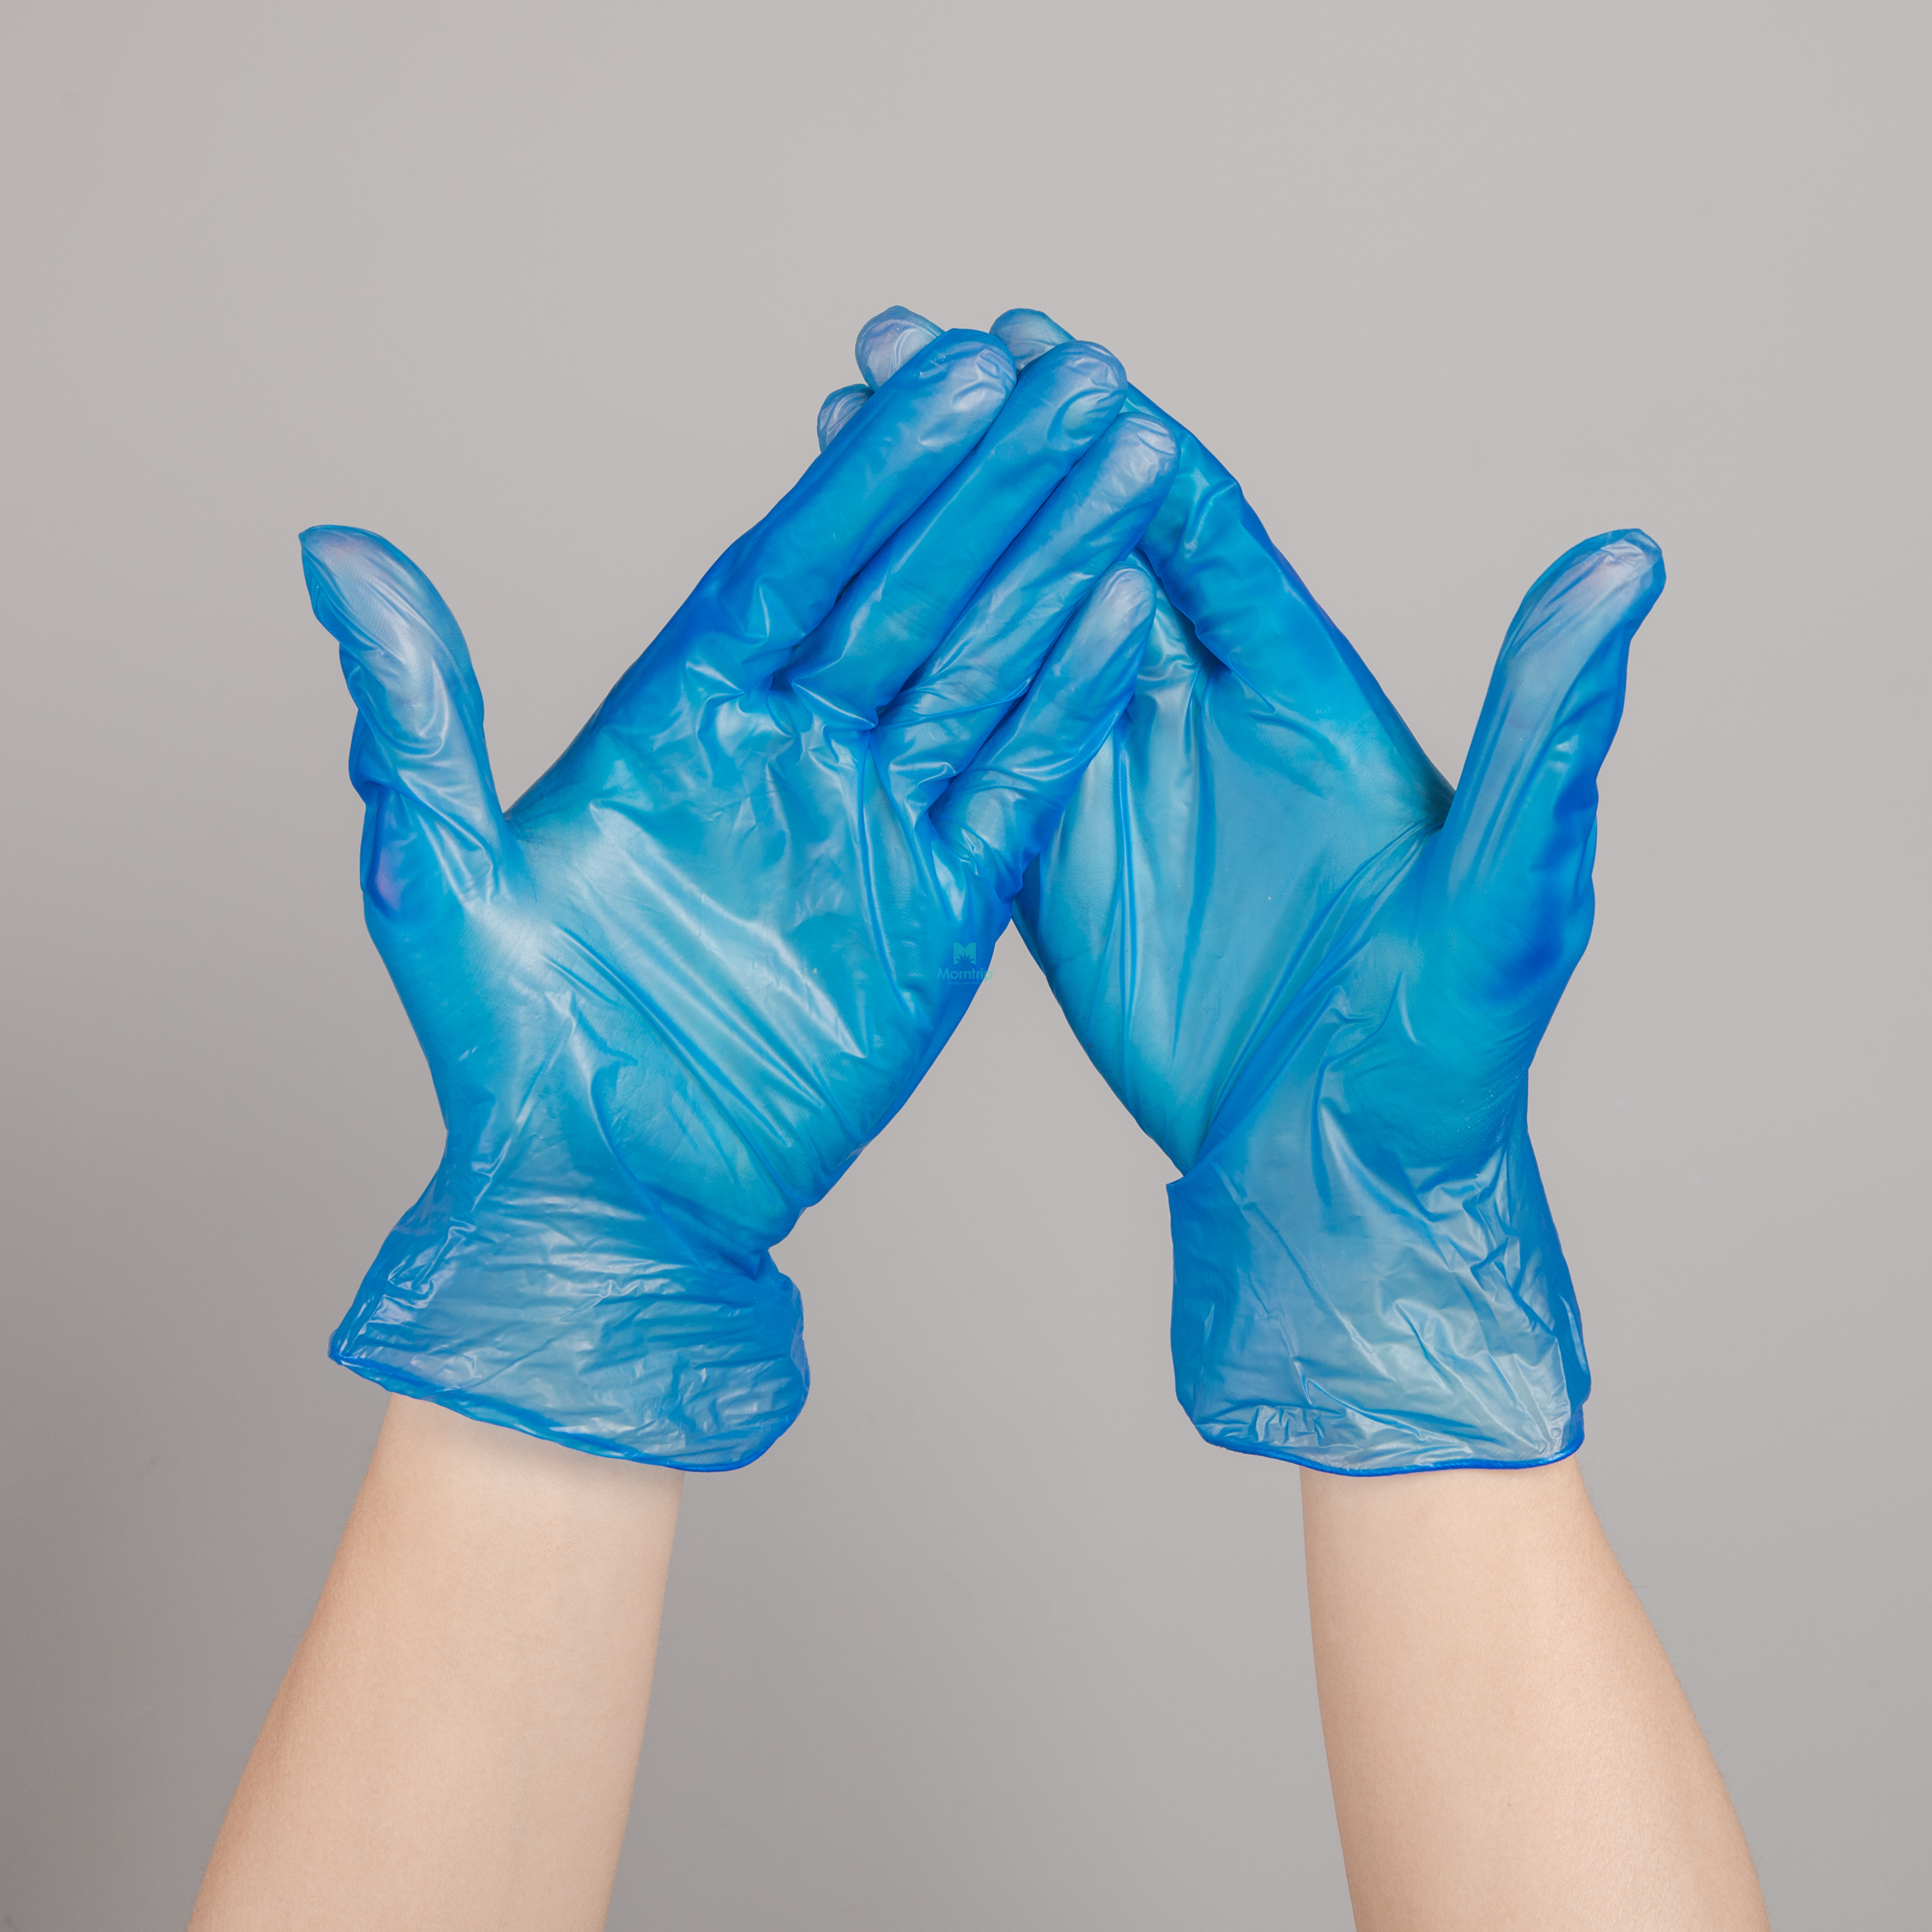 100 Pcs Sterile Procedure Surgical Disposable Powder Free Vinyl Gloves